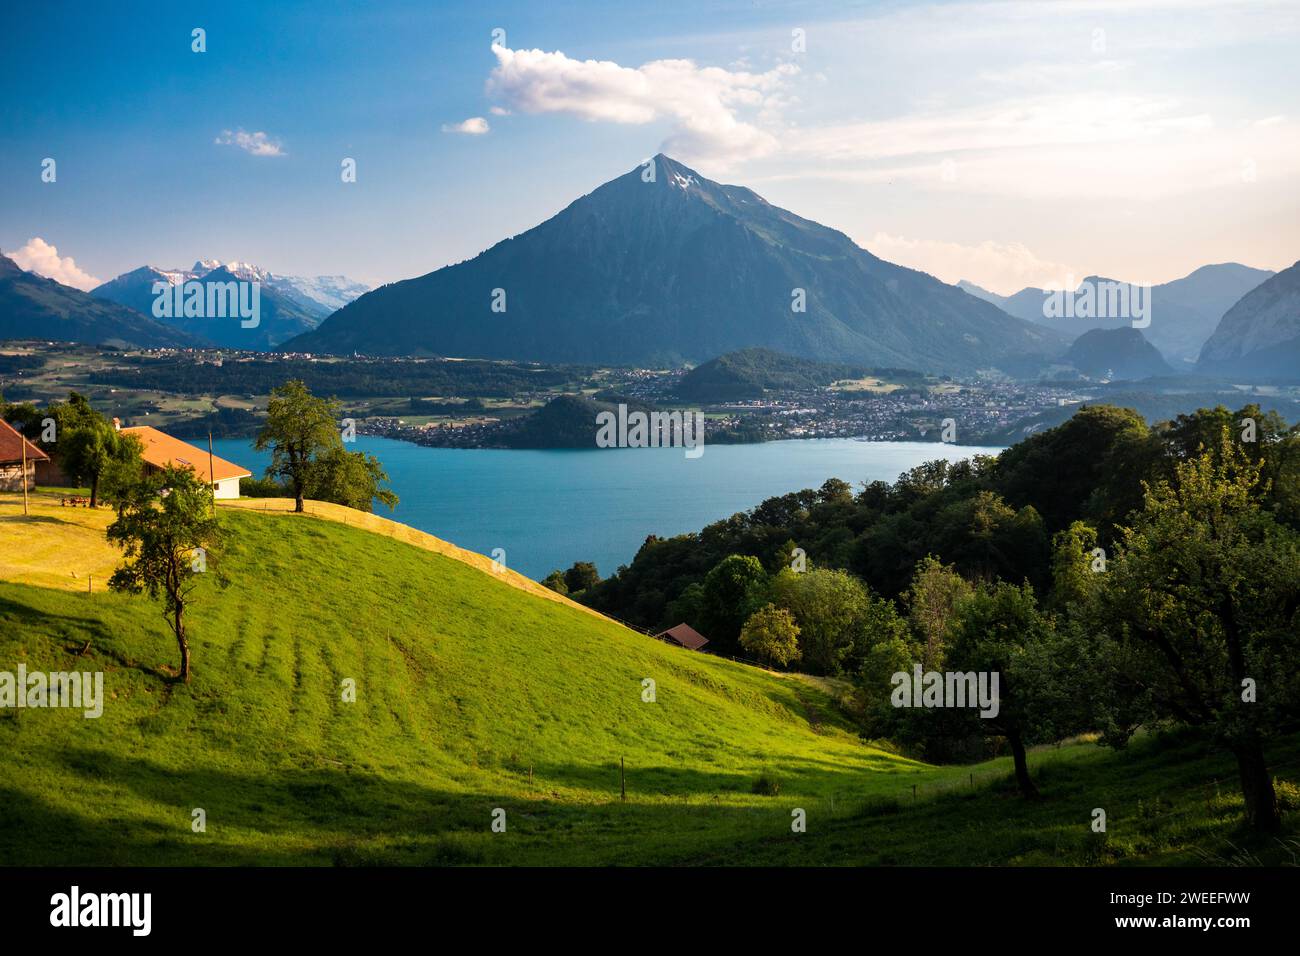 Vue panoramique sur la ville de Spiez, le lac de Thoune et la montagne Niesen en forme de pyramide en Suisse Banque D'Images